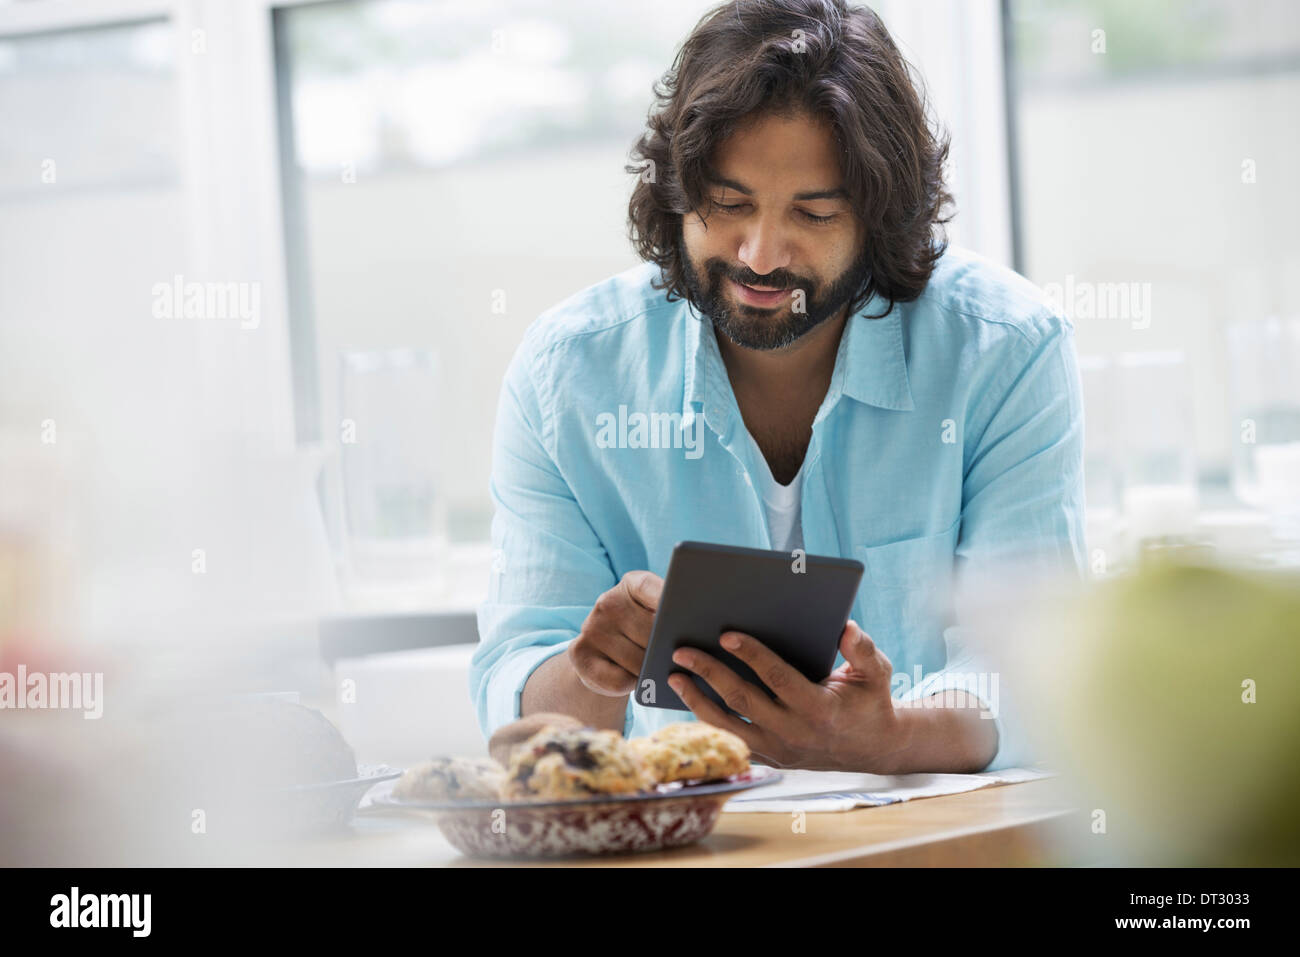 Una oficina o un apartamento interior en la Ciudad de Nueva York un hombre barbado en una camiseta de color turquesa con una tableta digital Foto de stock